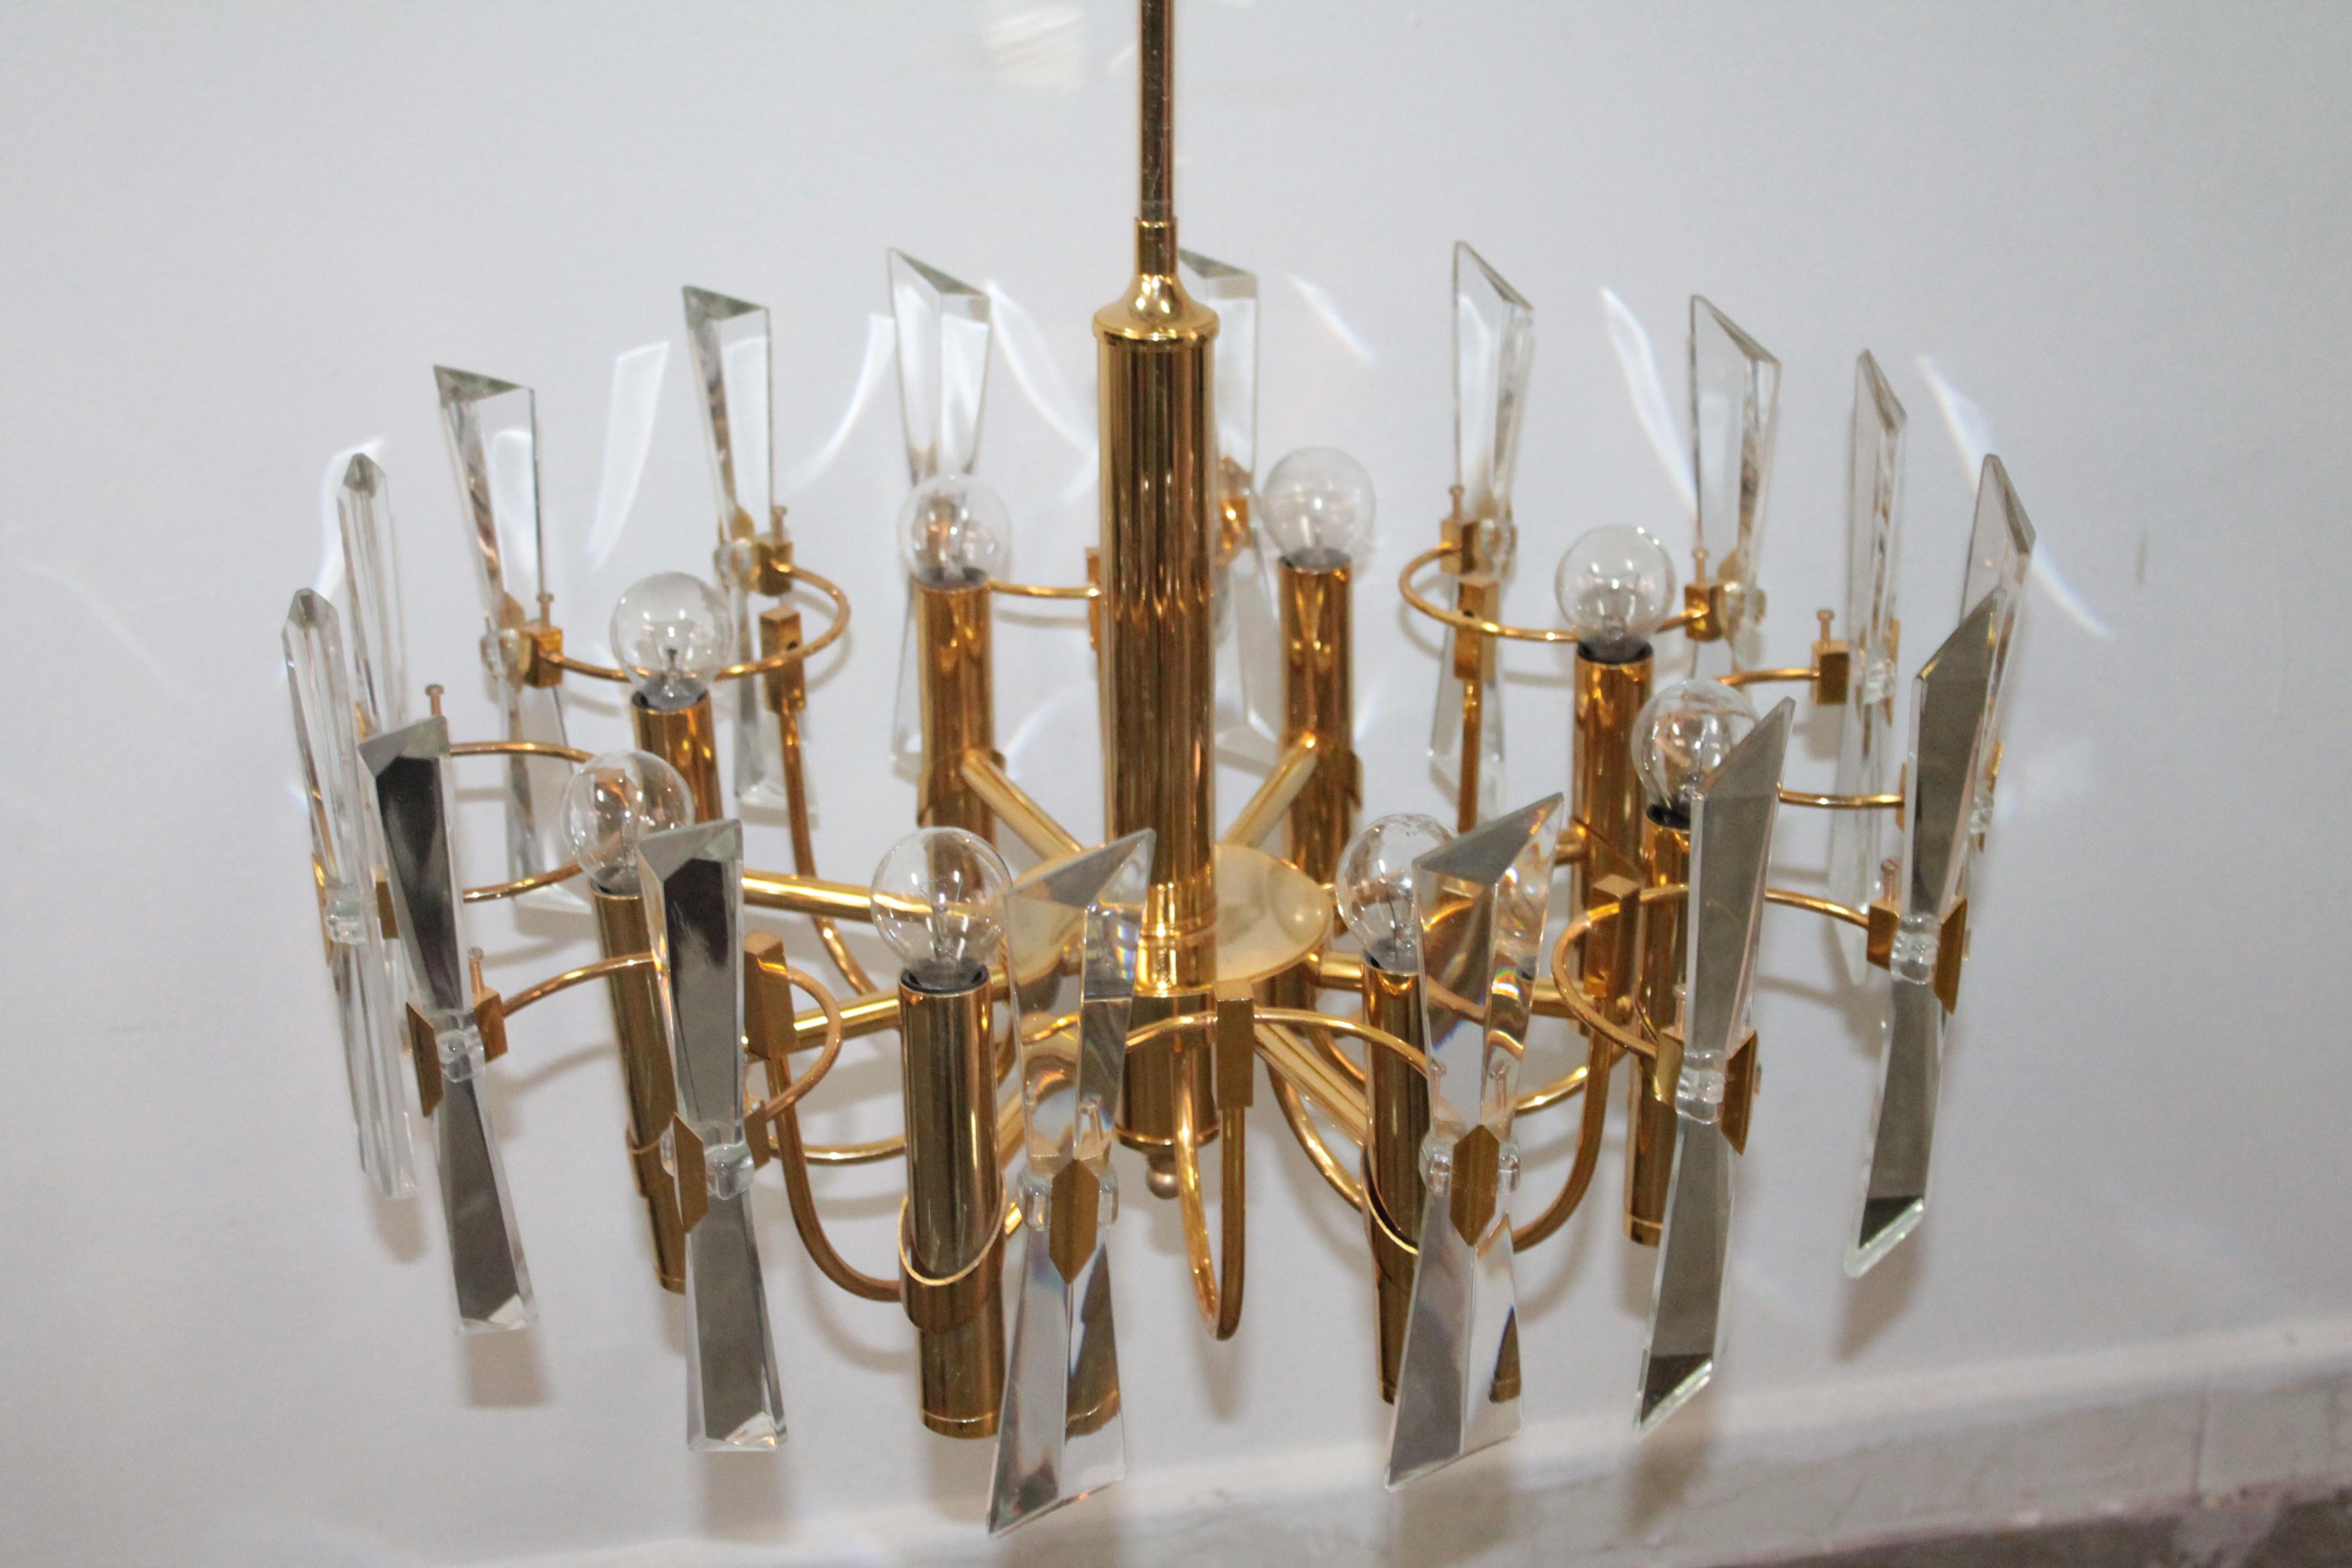 Gold Plate Modernist Gold Ceiling Lamp Sciolari 1970s Stilkronen Art Glass For Sale